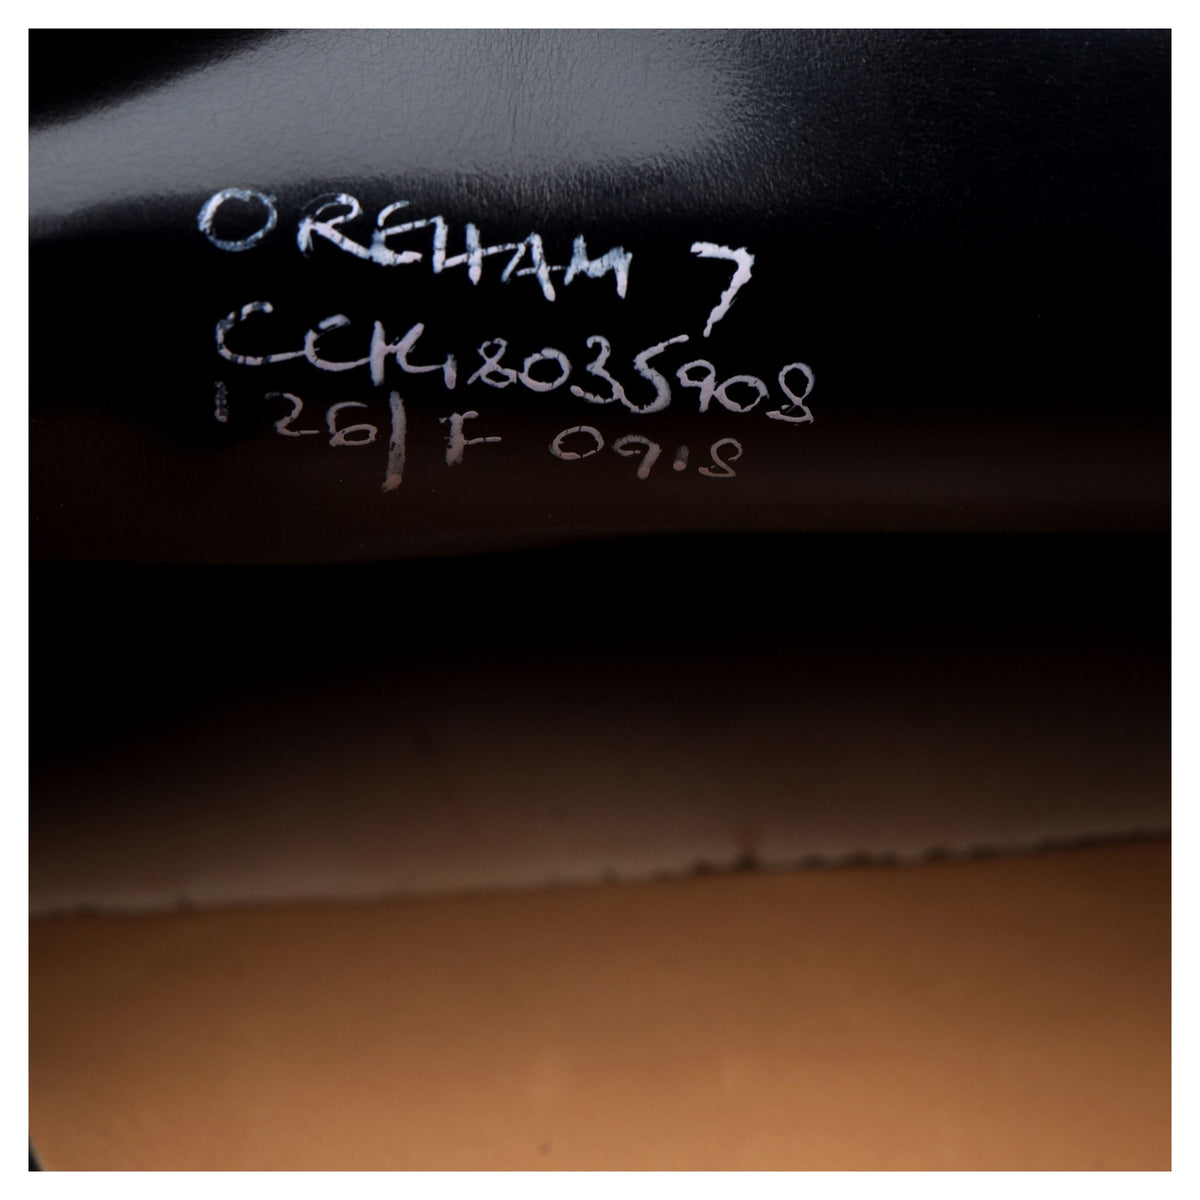 &#39;Oreham&#39; Black Leather Tassel Loafers UK 7 F